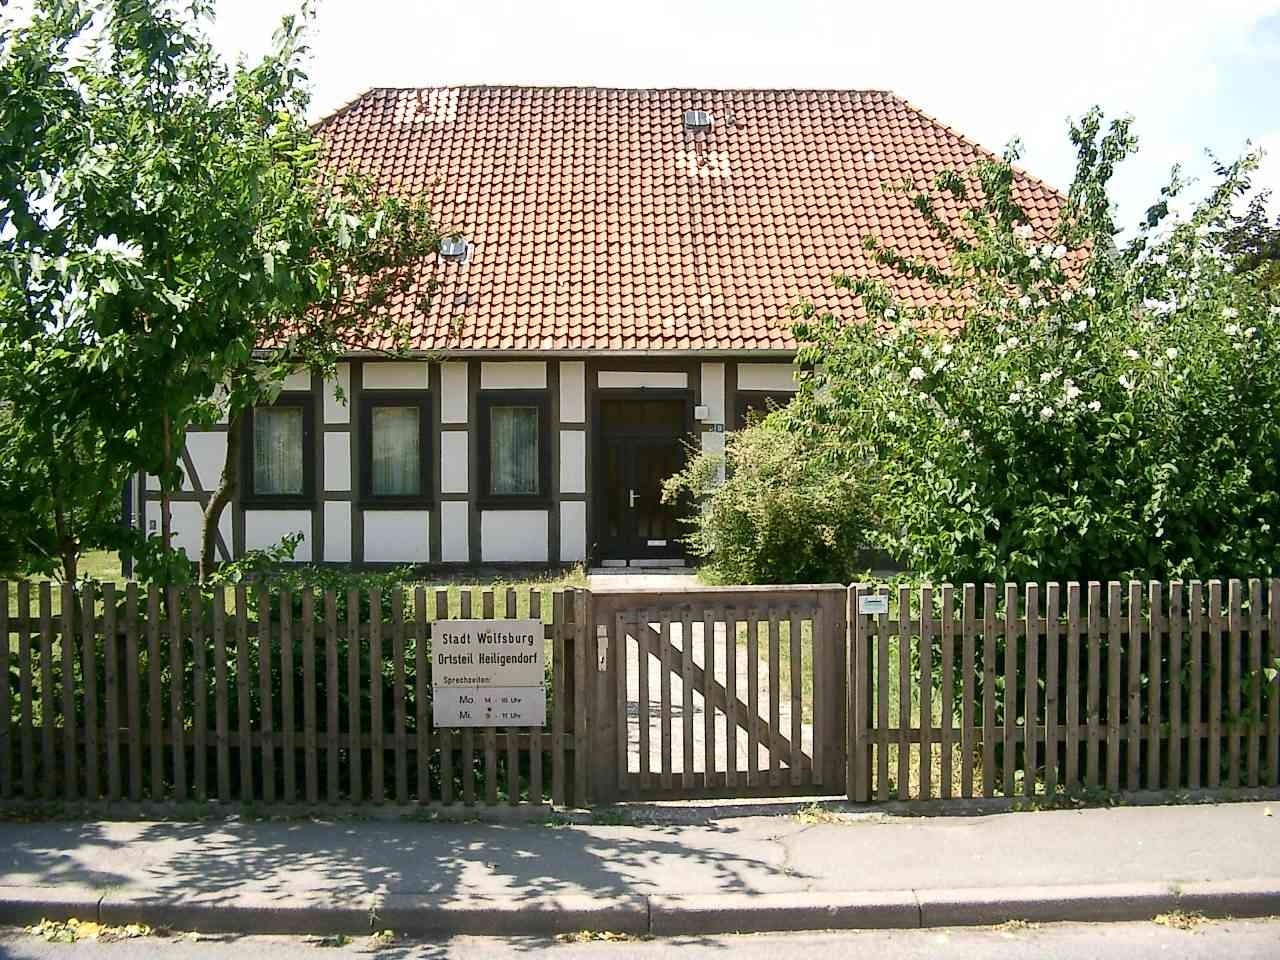 Ortsteilsprechstelle Heiligendorf